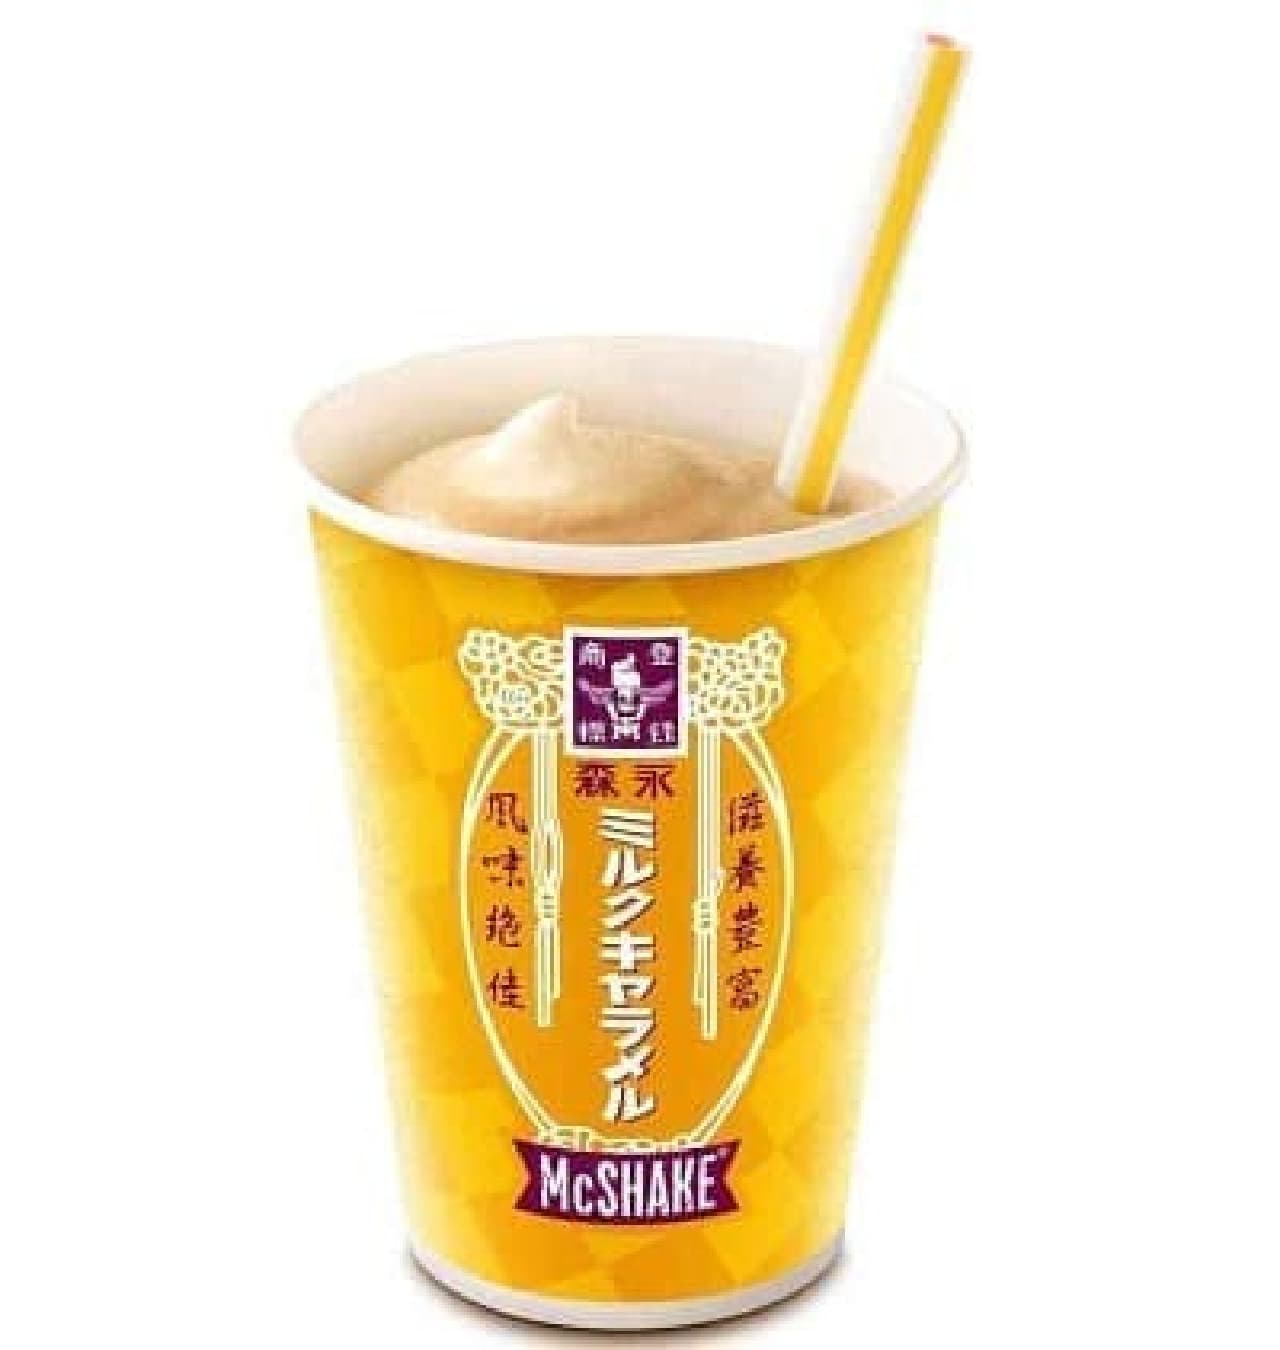 McDonald's "McShake Morinaga Milk Caramel"